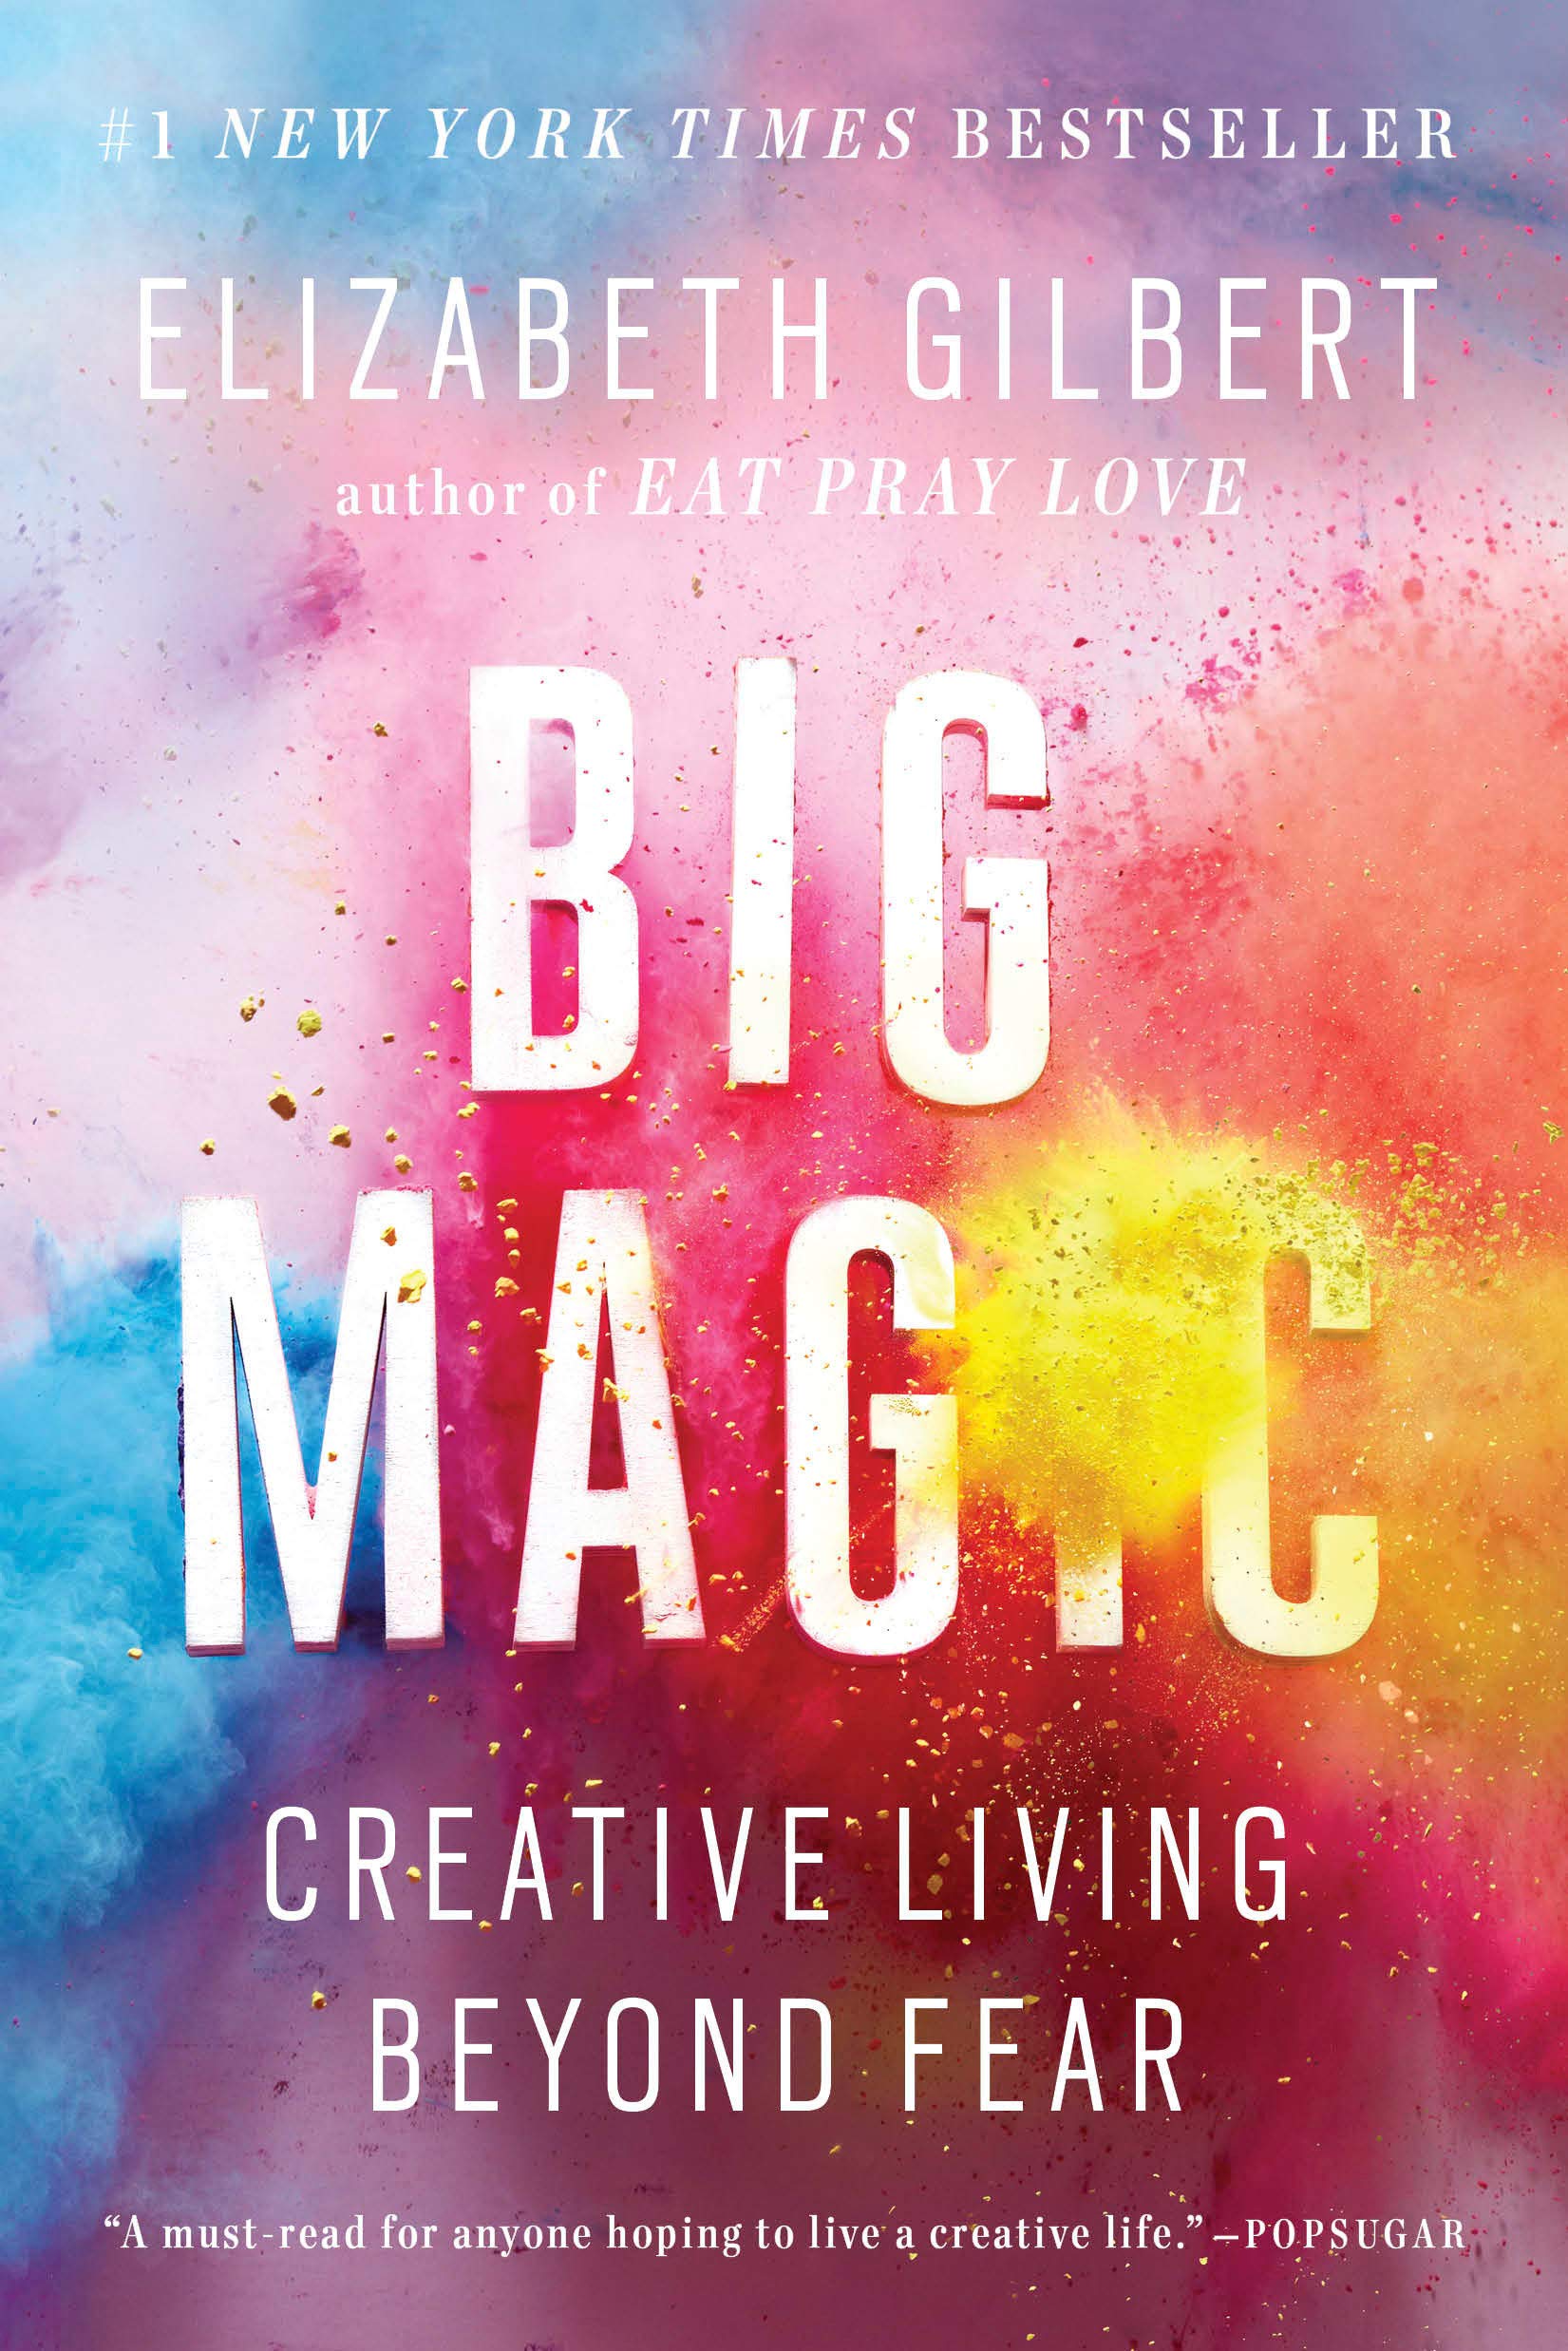 6. 'Big Magic' by Elizabeth Gilbert